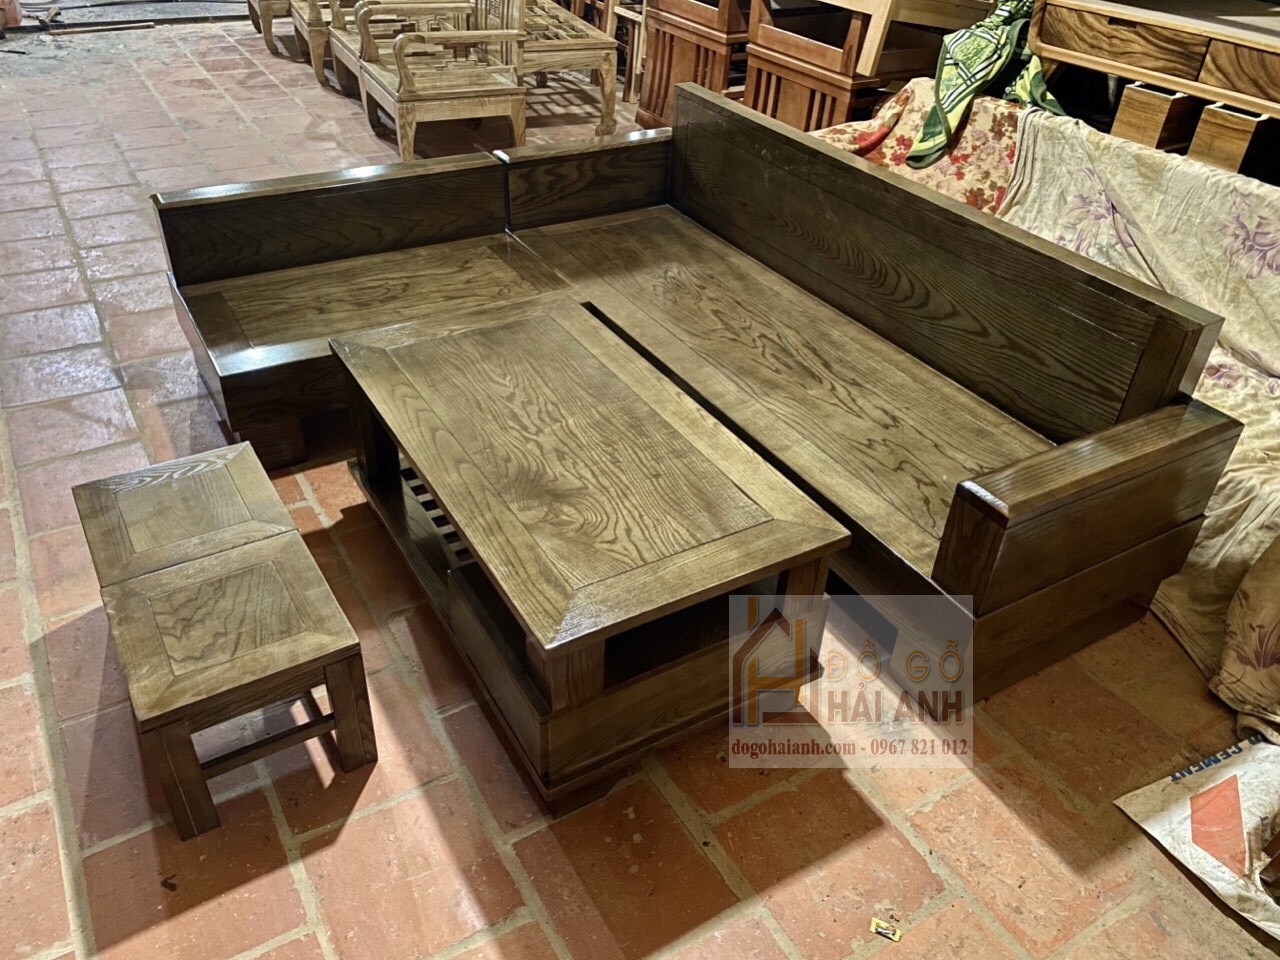 Đồ gỗ Hải Anh - Chuyên cung cấp sỉ lẻ số lượng lớn sofa gỗ, bàn ...